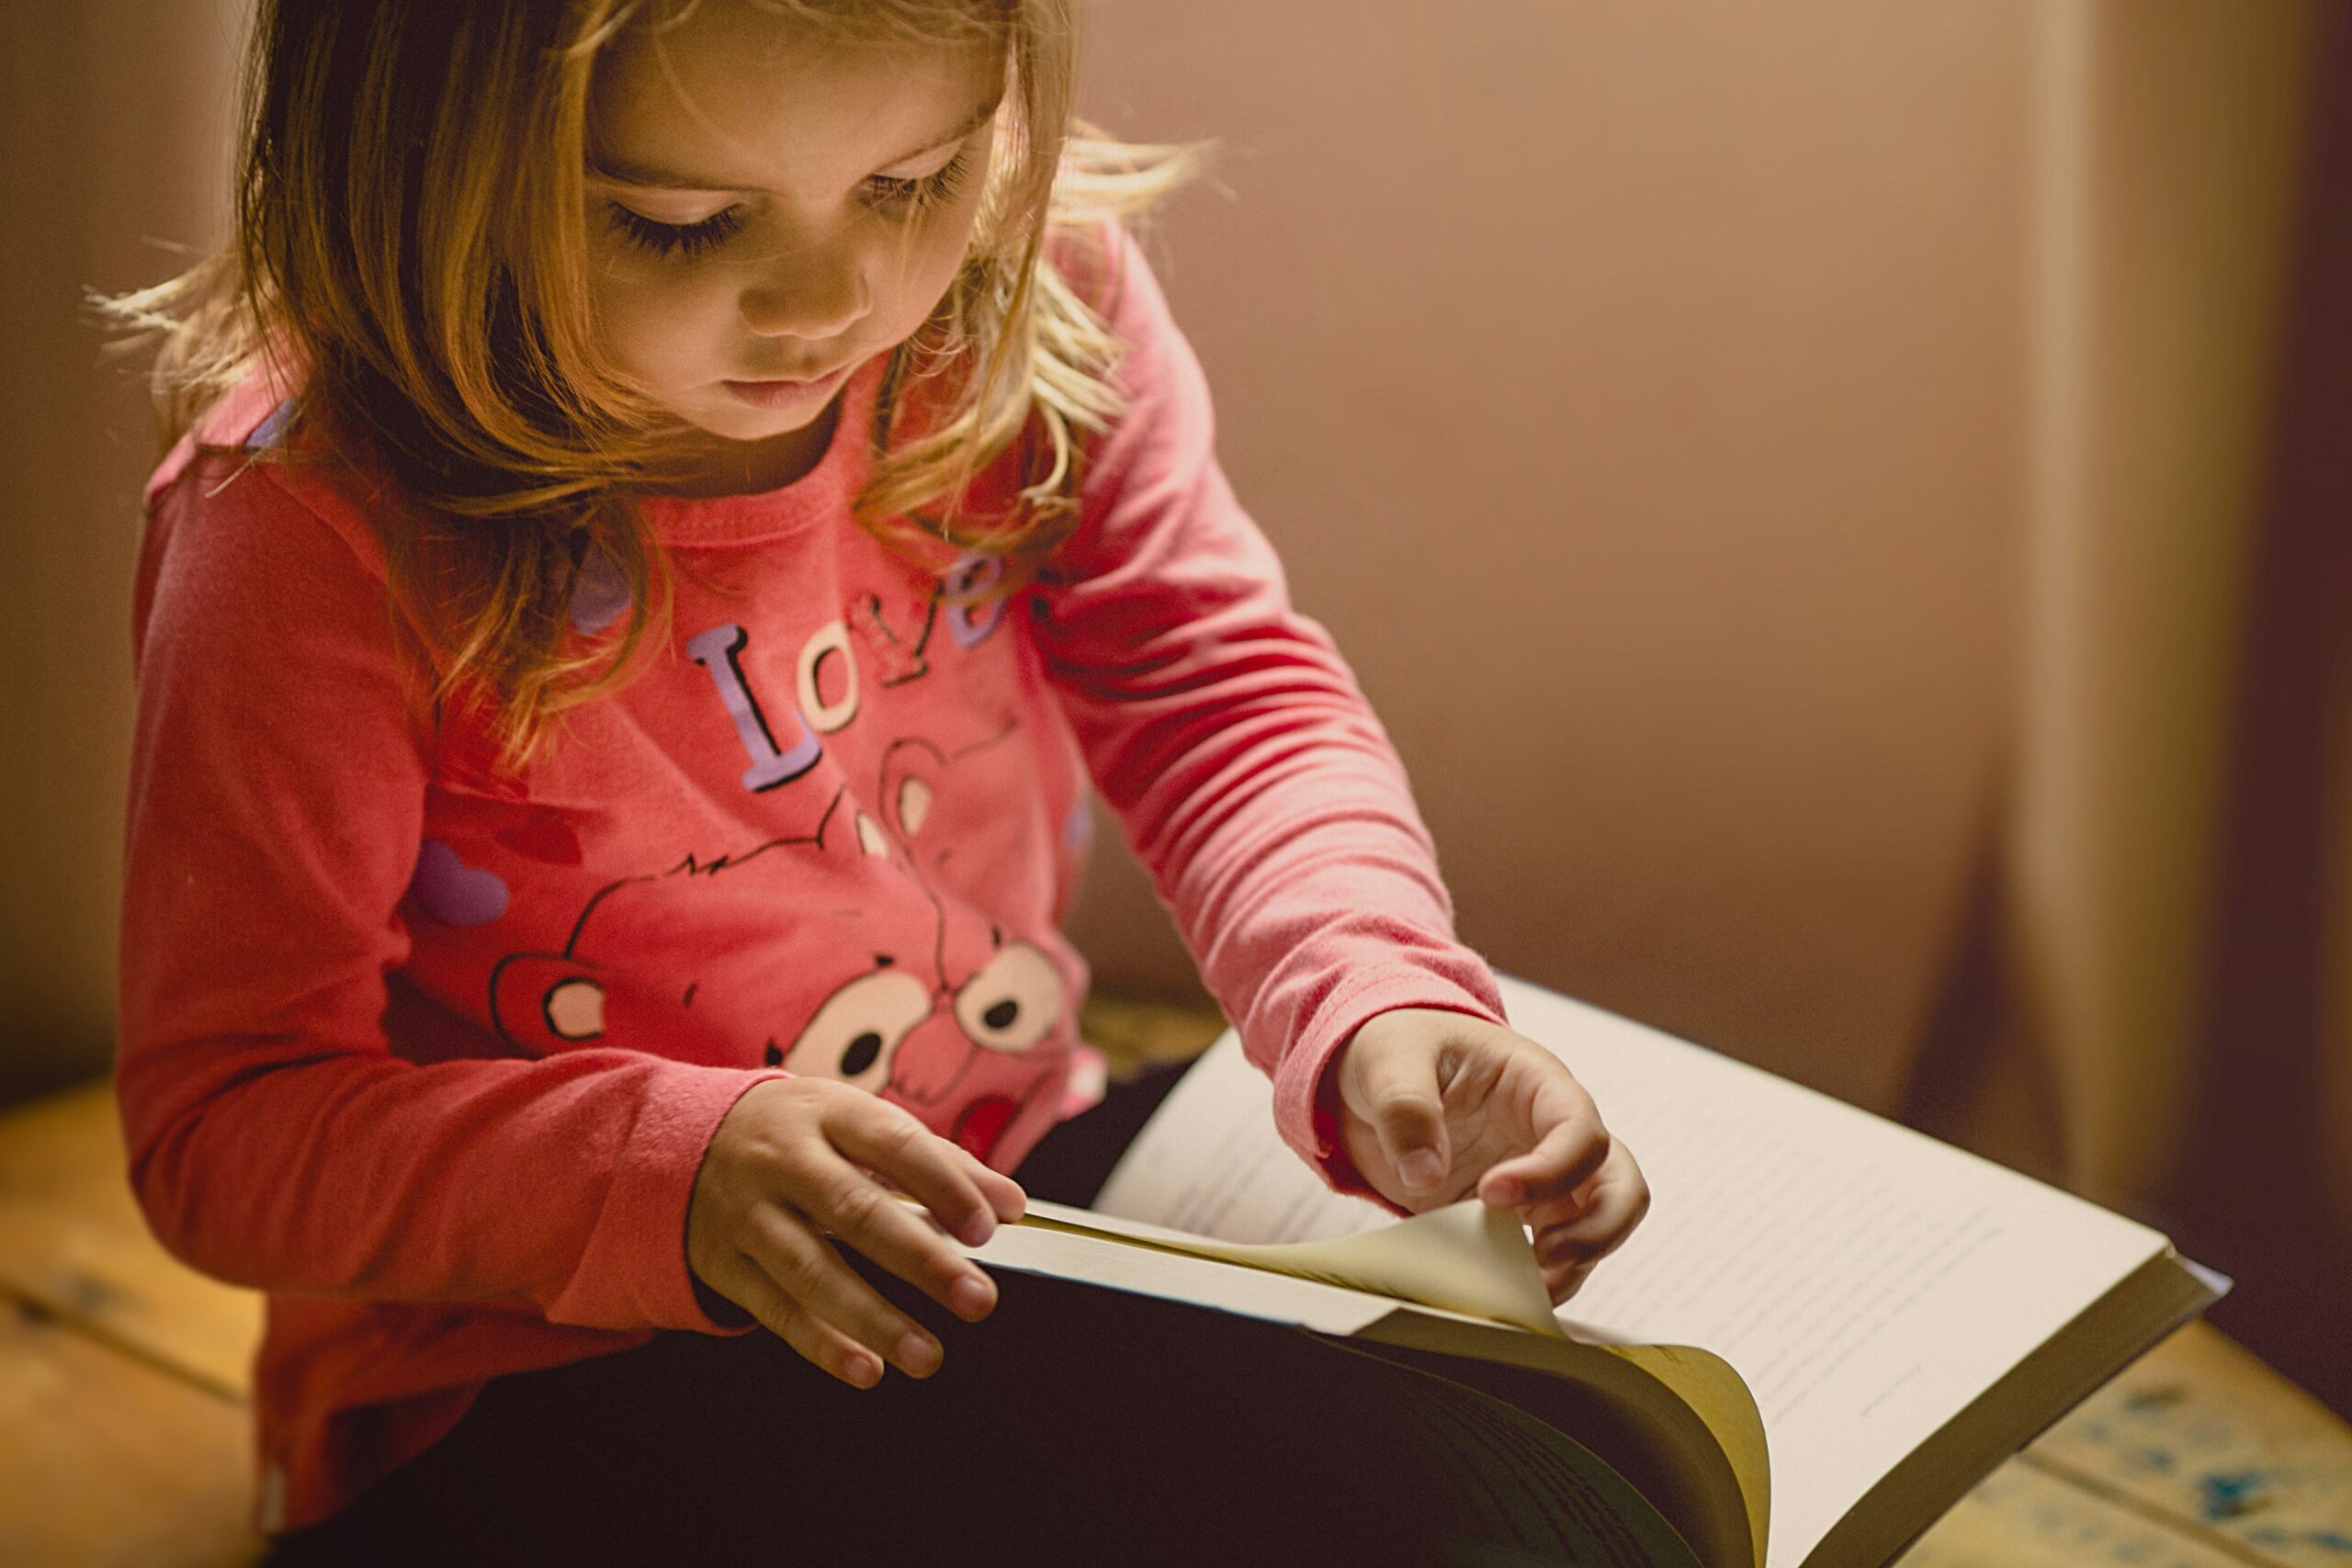 Po lewej stronie kadru widoczna siedząca mała dziewczynka. Na kolanach trzyma rozłożoną książkę. Dziewczynka ma blond włosy do ramion, ubrana jest w różową bluzę we wzorki.